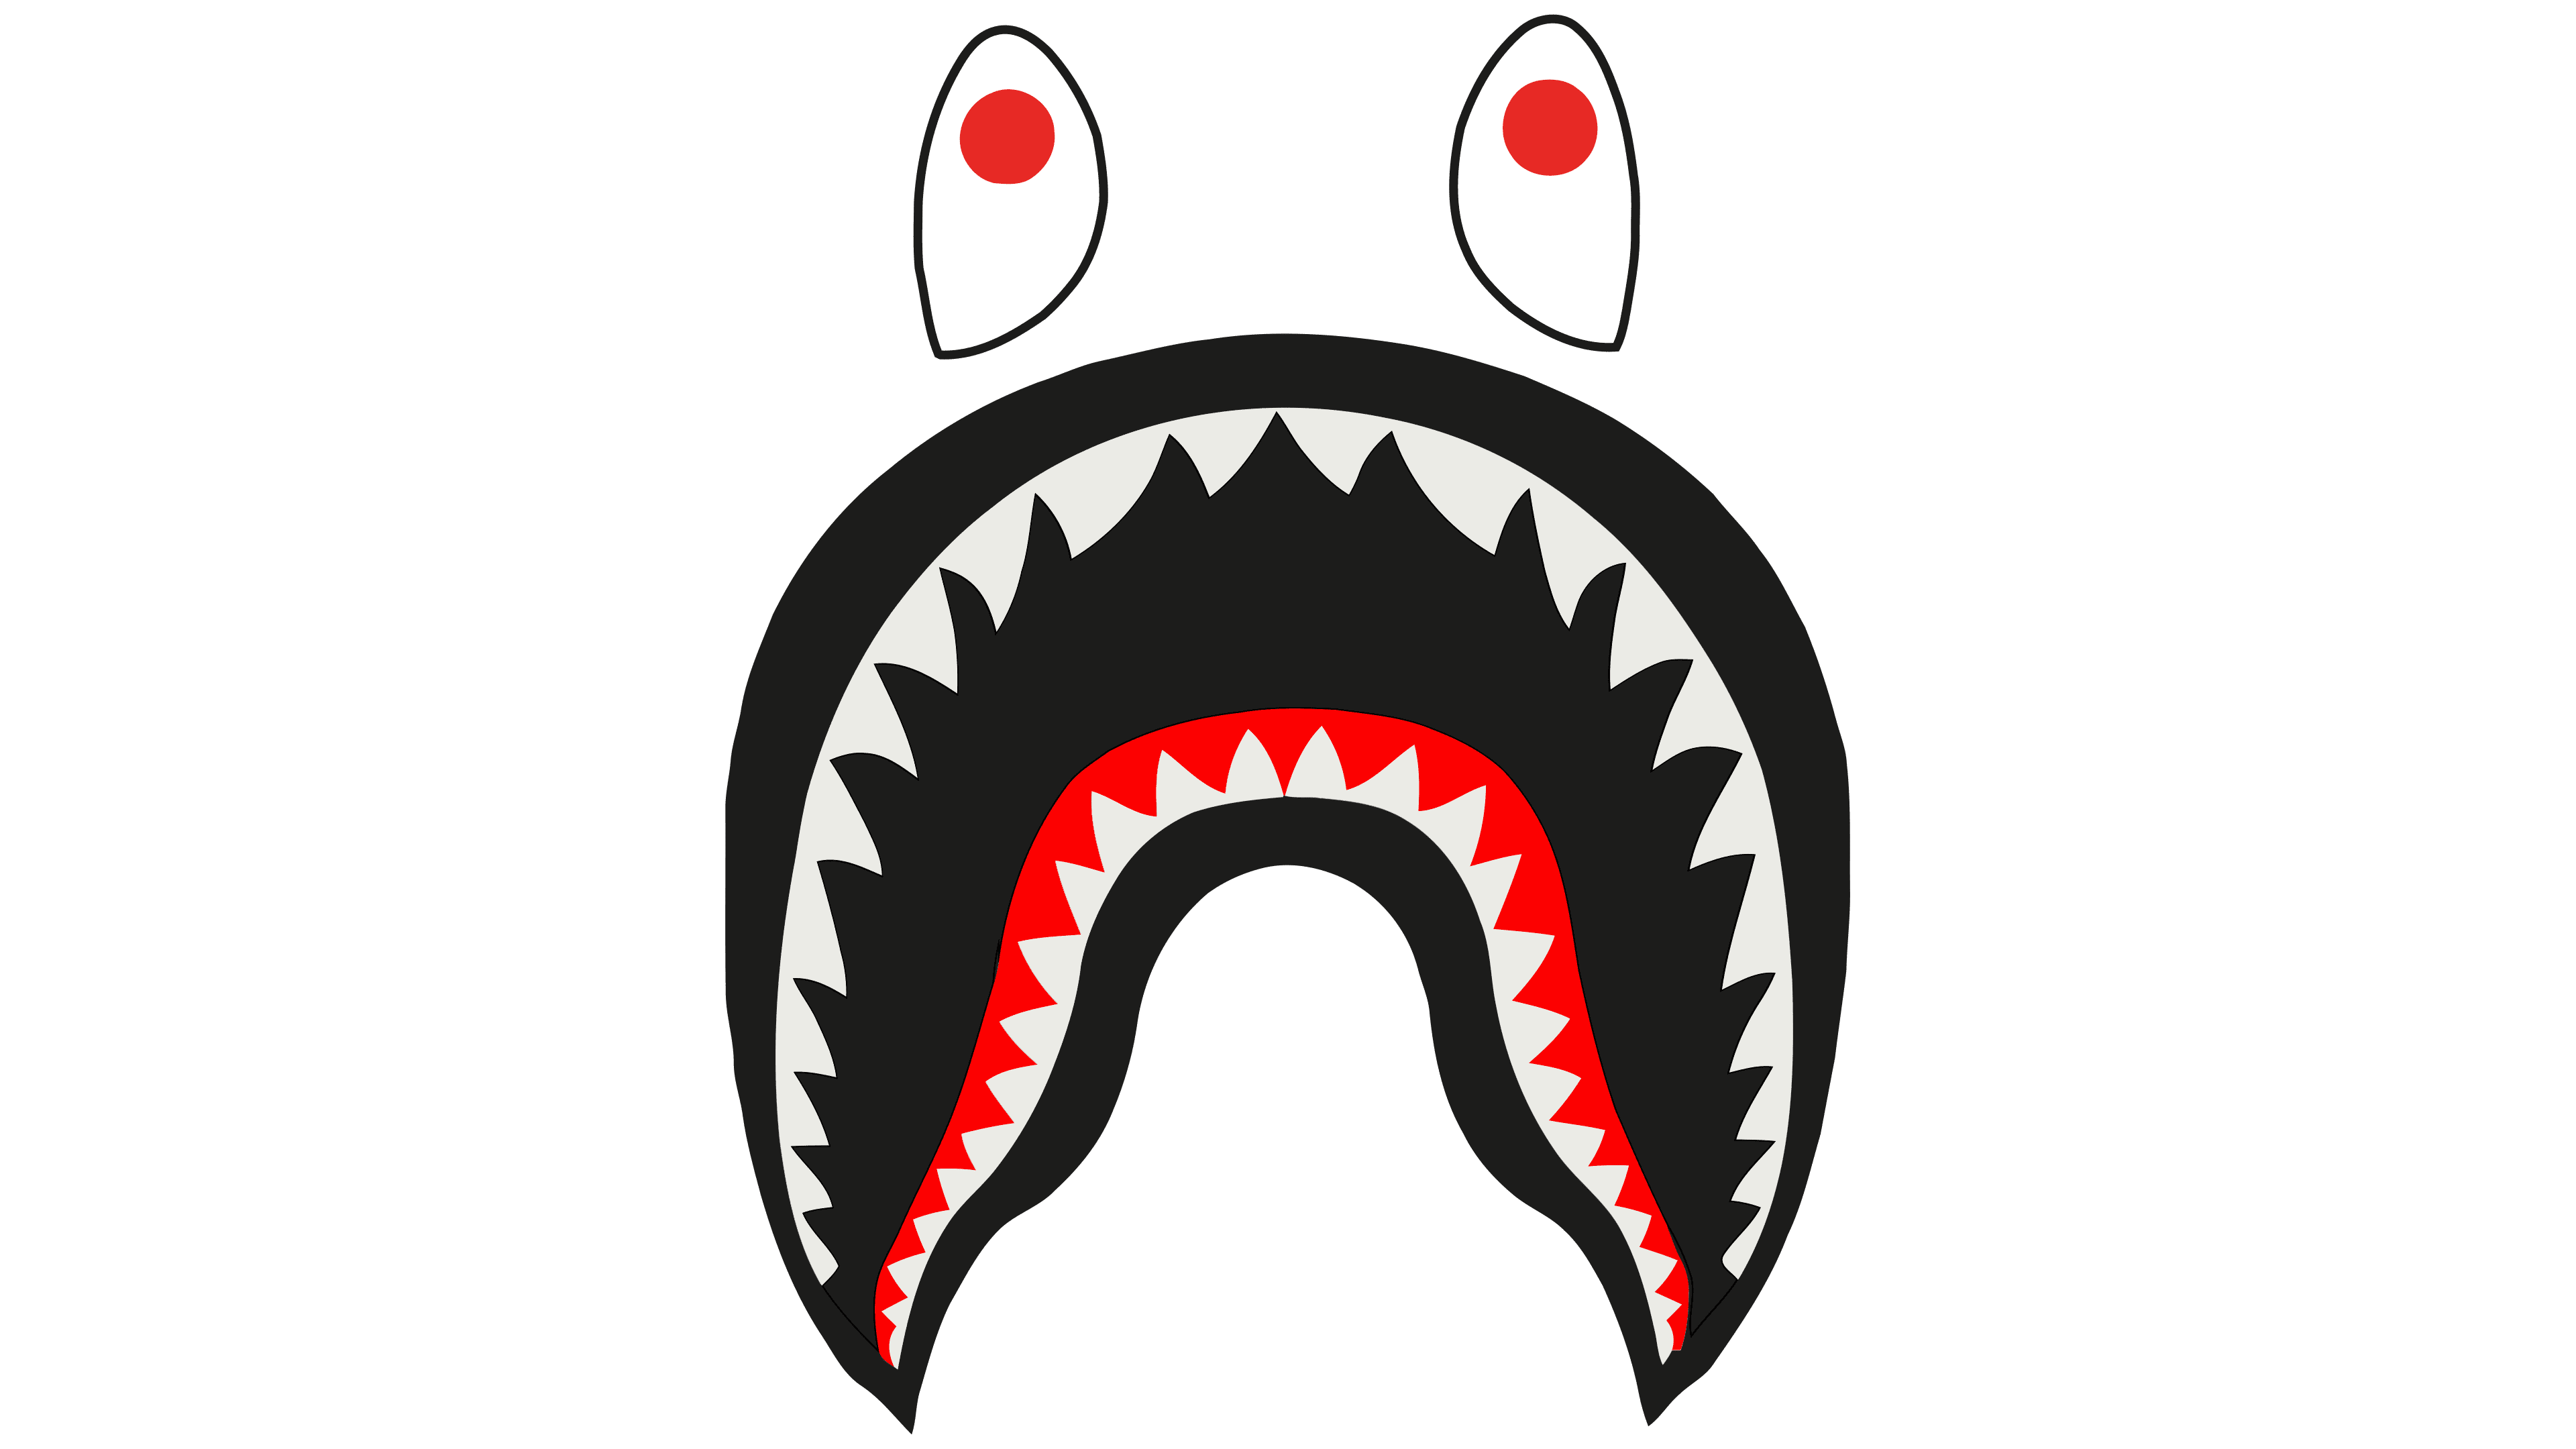 Bape Shark Logo PNG Image With Transparent Background TOPpng | vlr.eng.br